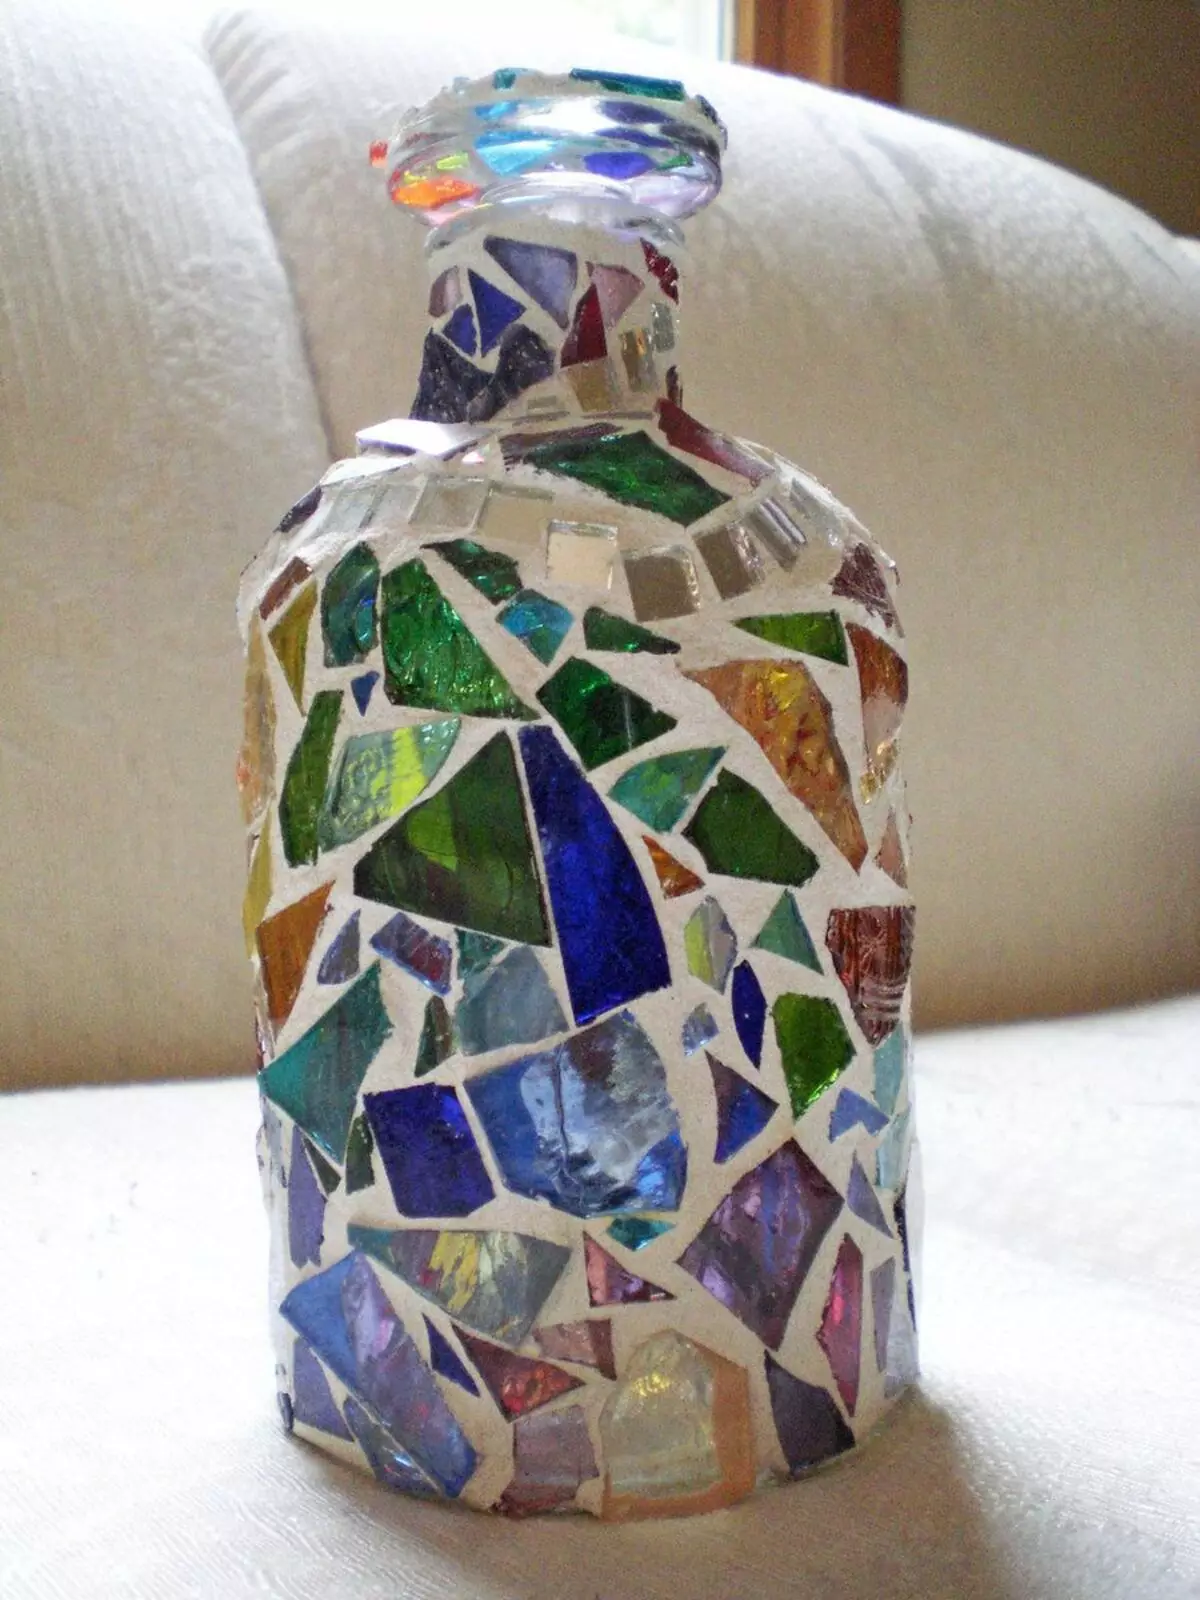 زجاجات ديكور: زخرفة جميلة من زجاجات الزجاج من النبيذ بأيديهم، والديكور مع الخيوط والجوارب، لرجل وامرأة 25995_54